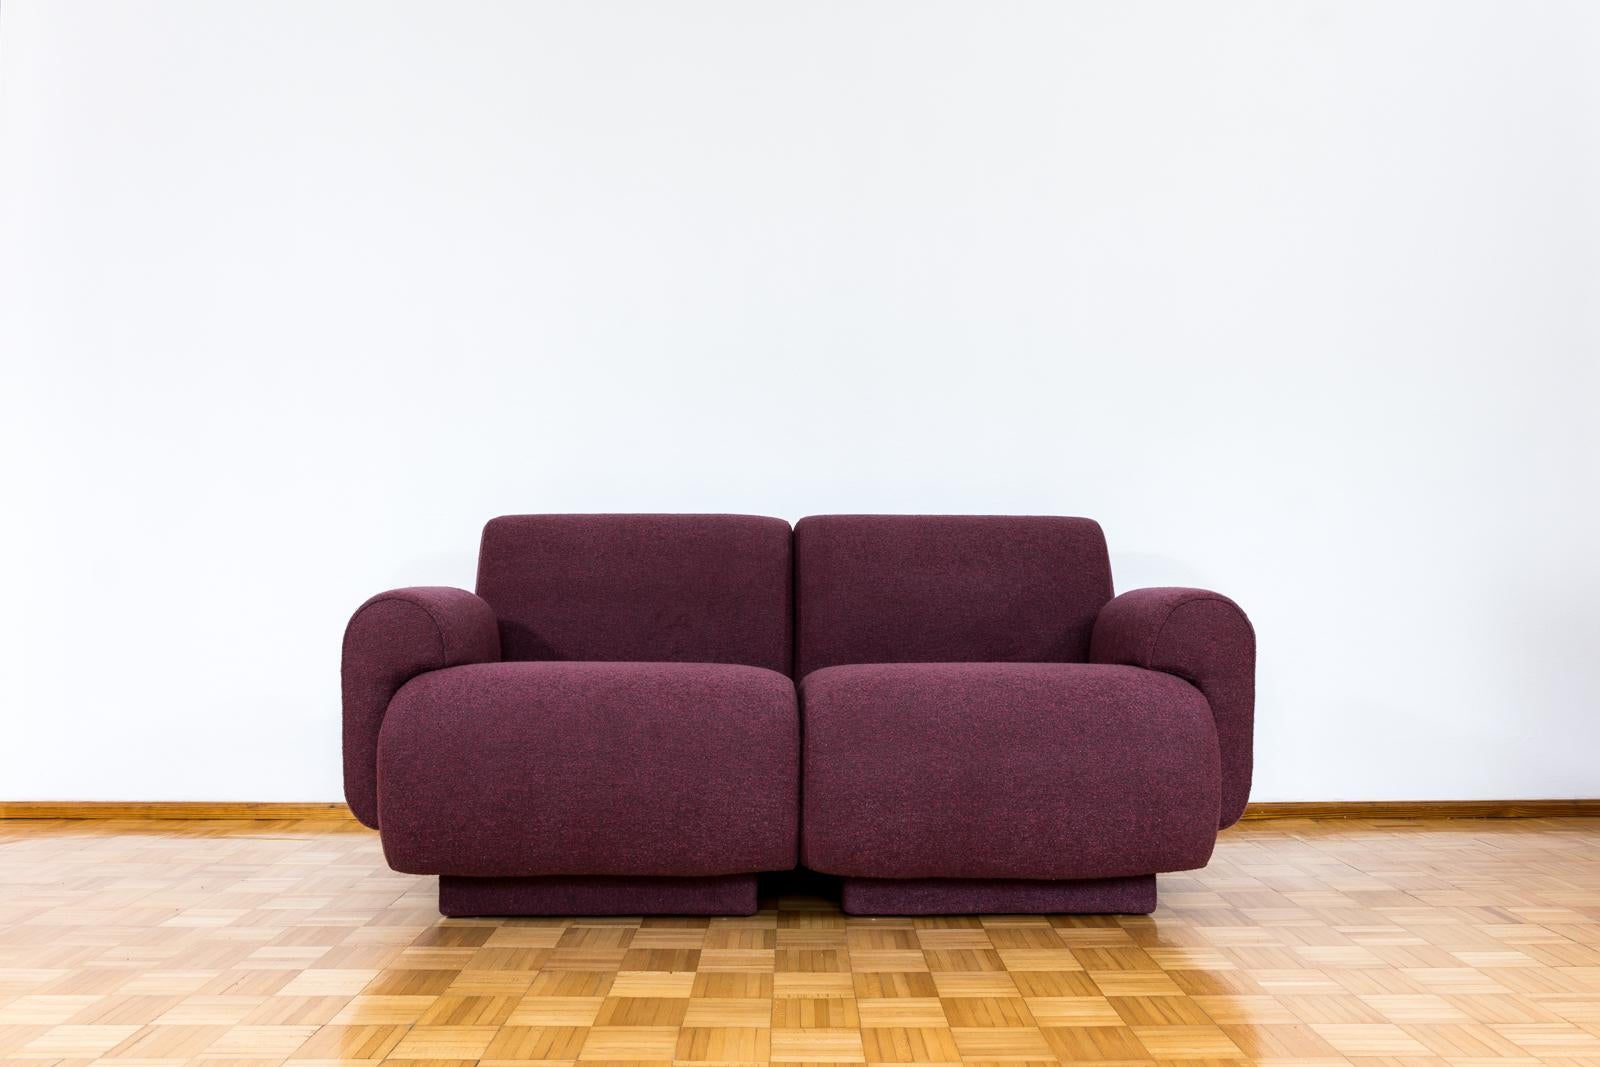 Canapé modulaire de la fabrique de meubles Oelsa à Rabenau, Allemagne, 1978.
Entièrement recouvert d'un tissu souple violet foncé.
Ce canapé deux places est modulable et peut facilement se transformer en 2 fauteuils (tous les accoudoirs sont